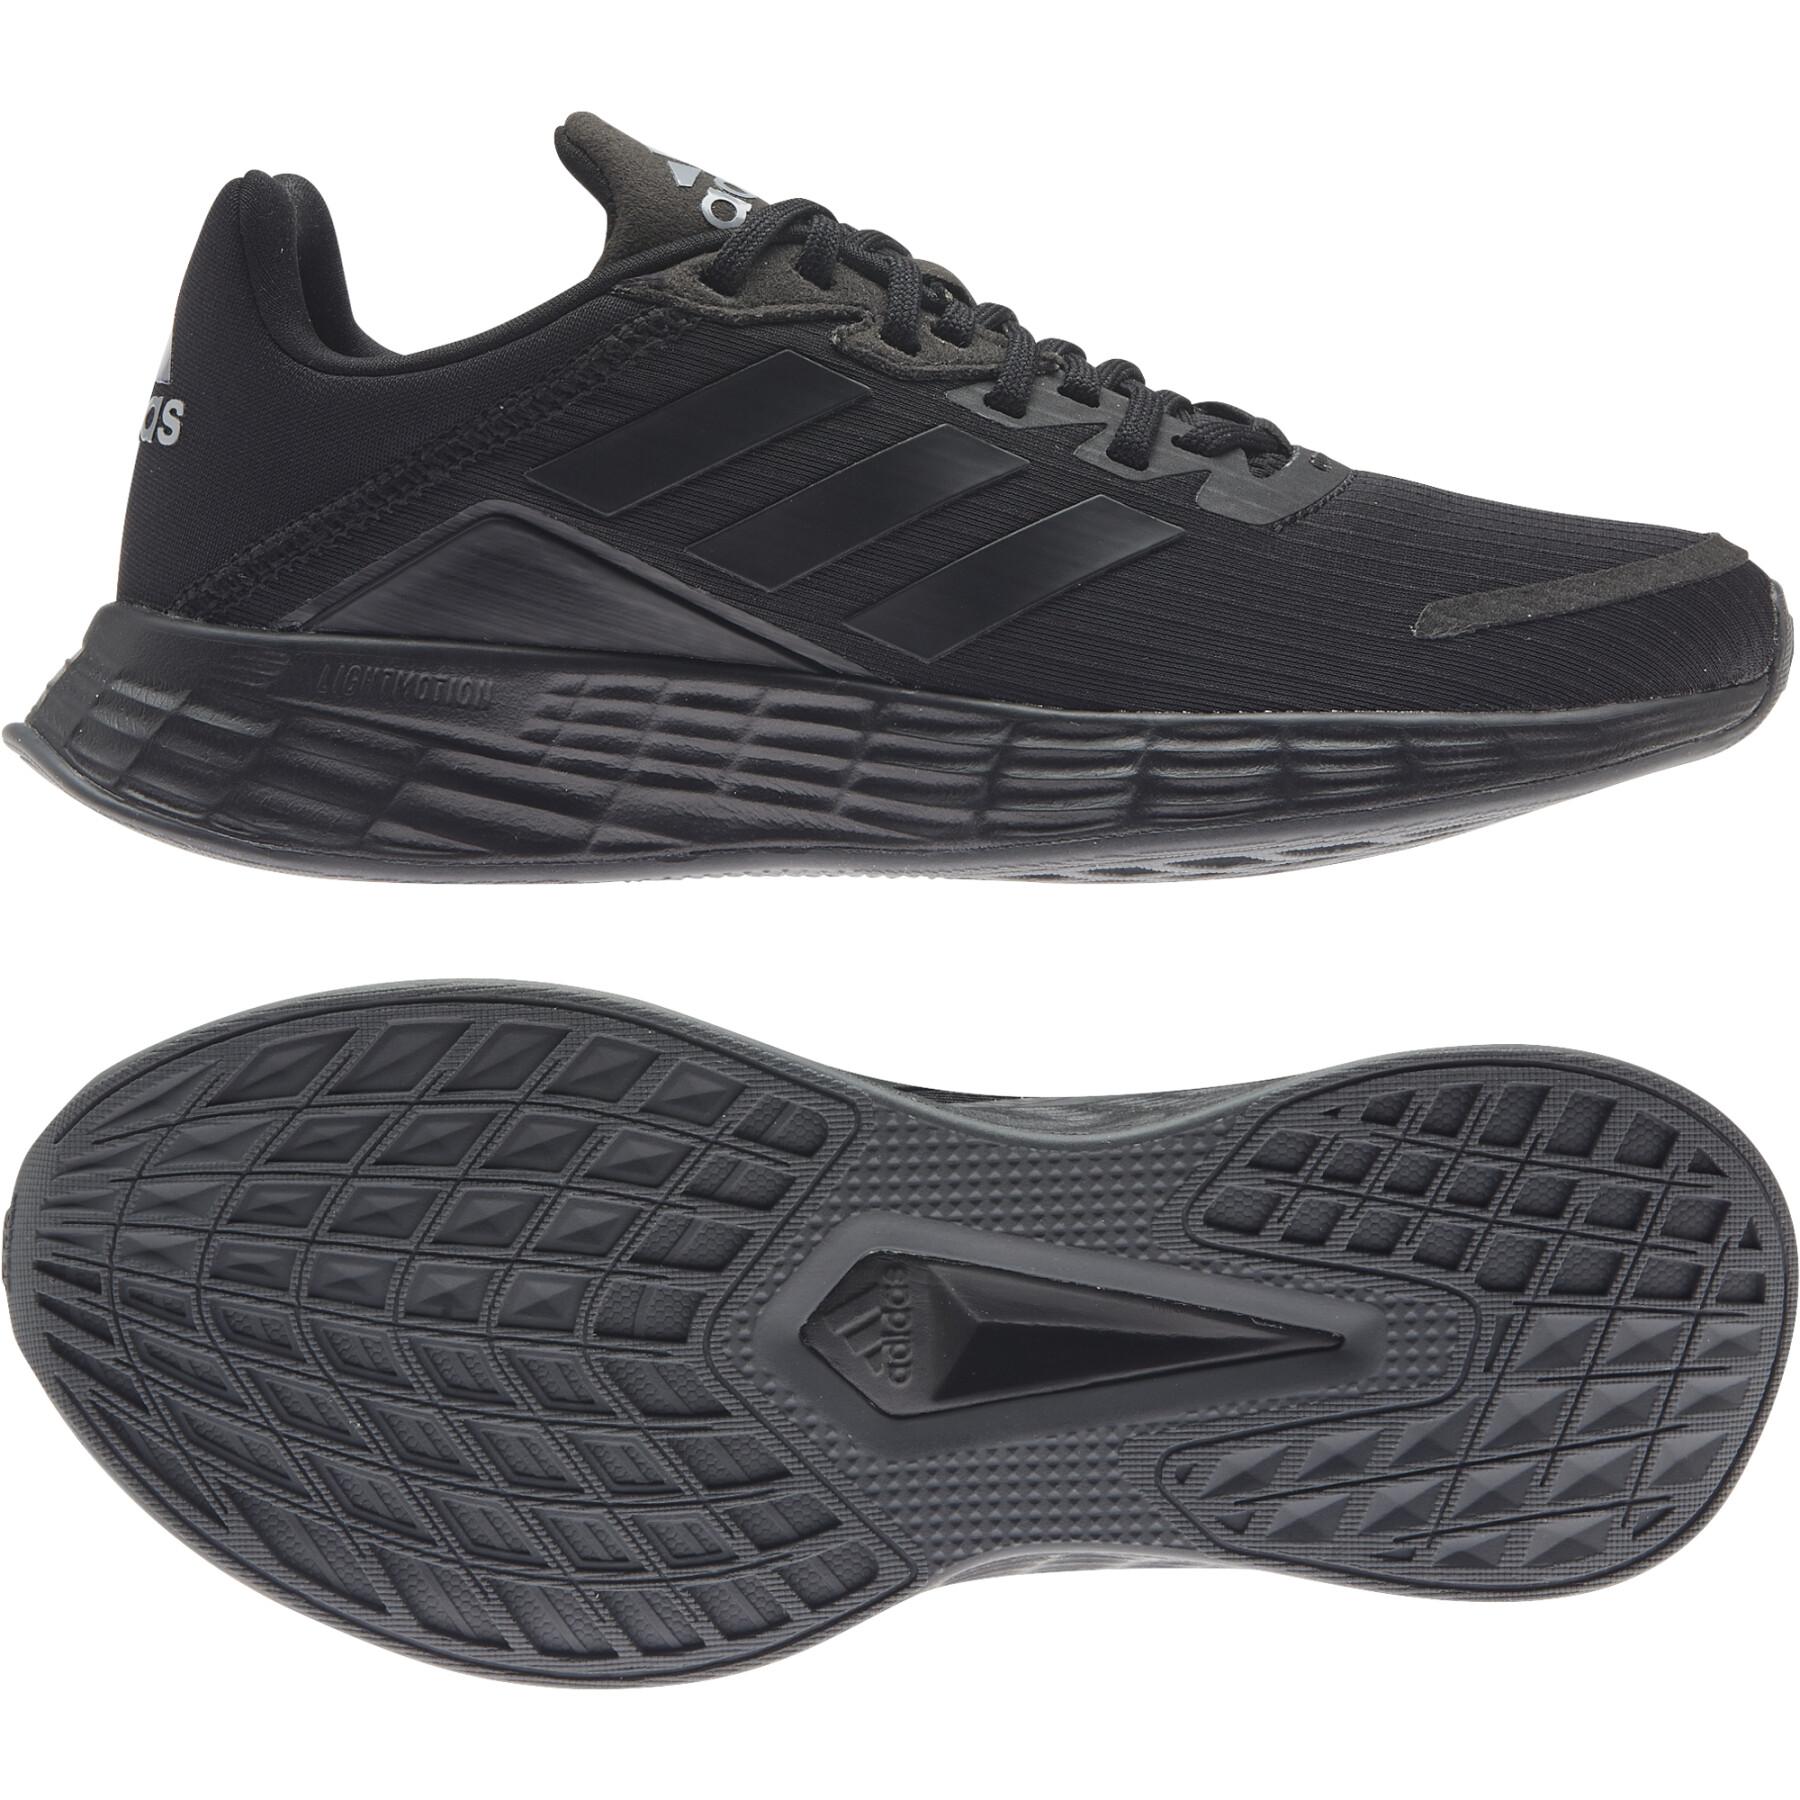 Buty do biegania dla dzieci adidas Duramo SL